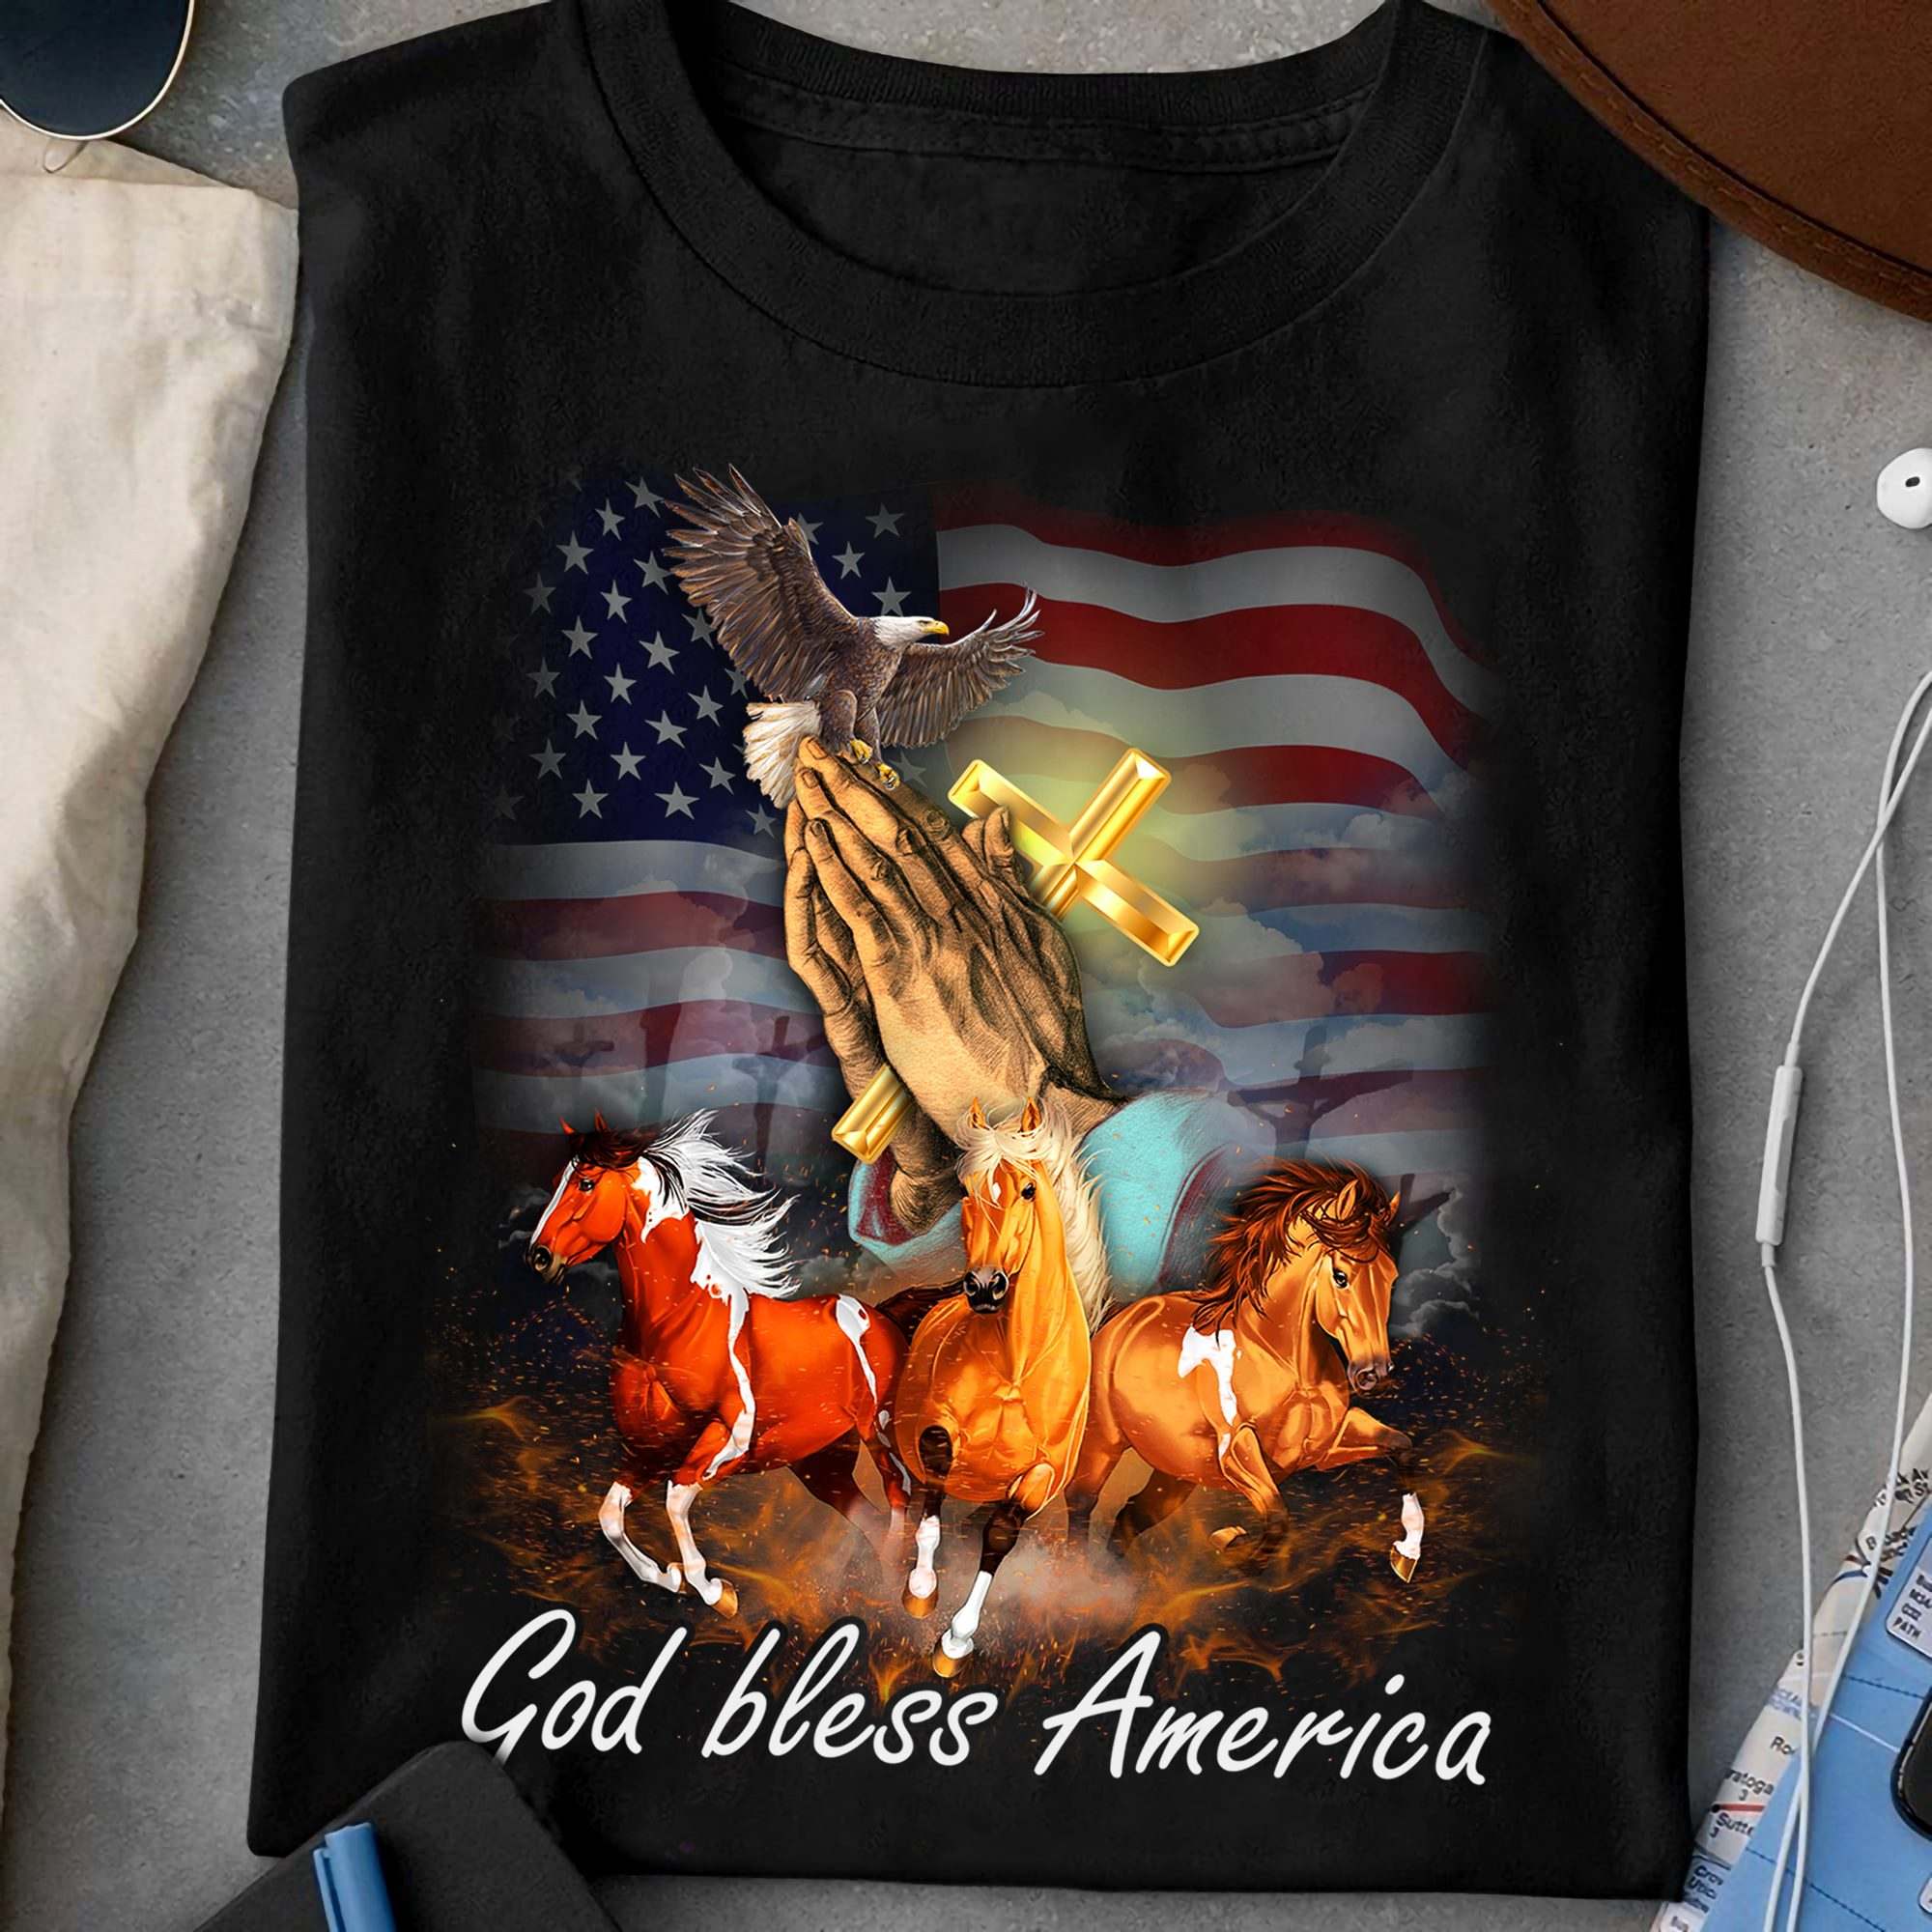 God bless America - Running horse, god's cross